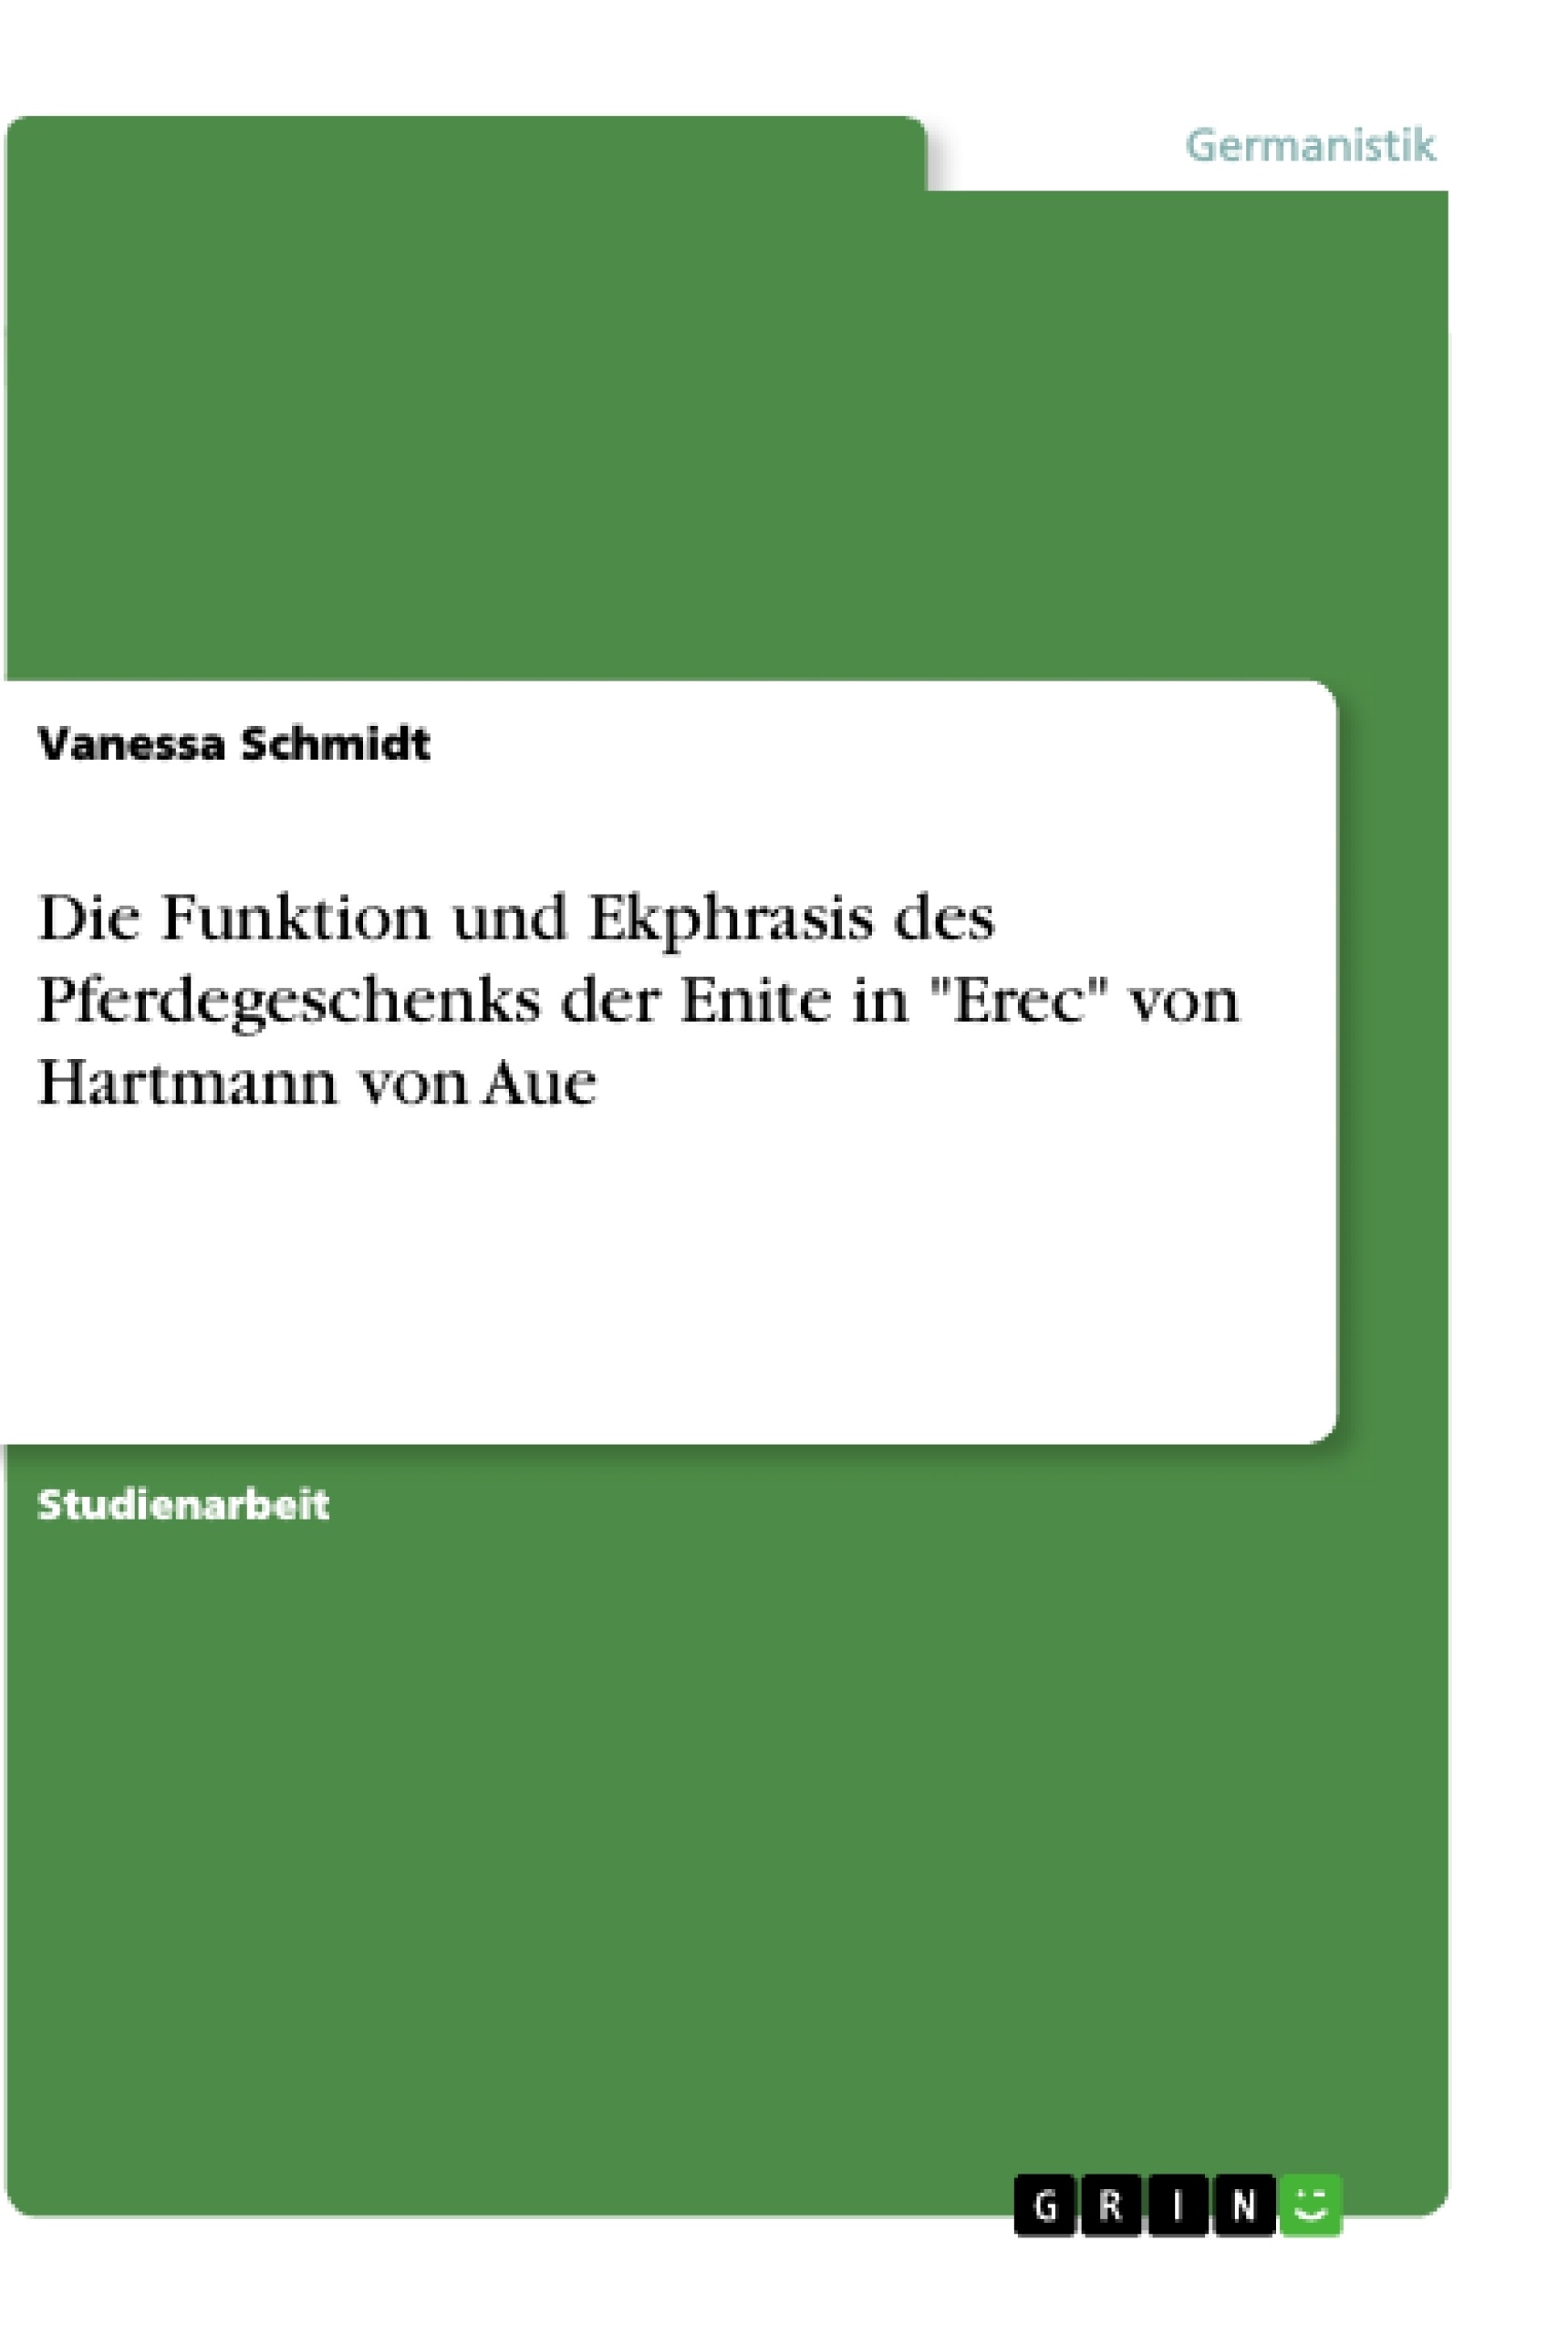 Titel: Die Funktion und Ekphrasis des Pferdegeschenks der Enite in "Erec" von Hartmann von Aue